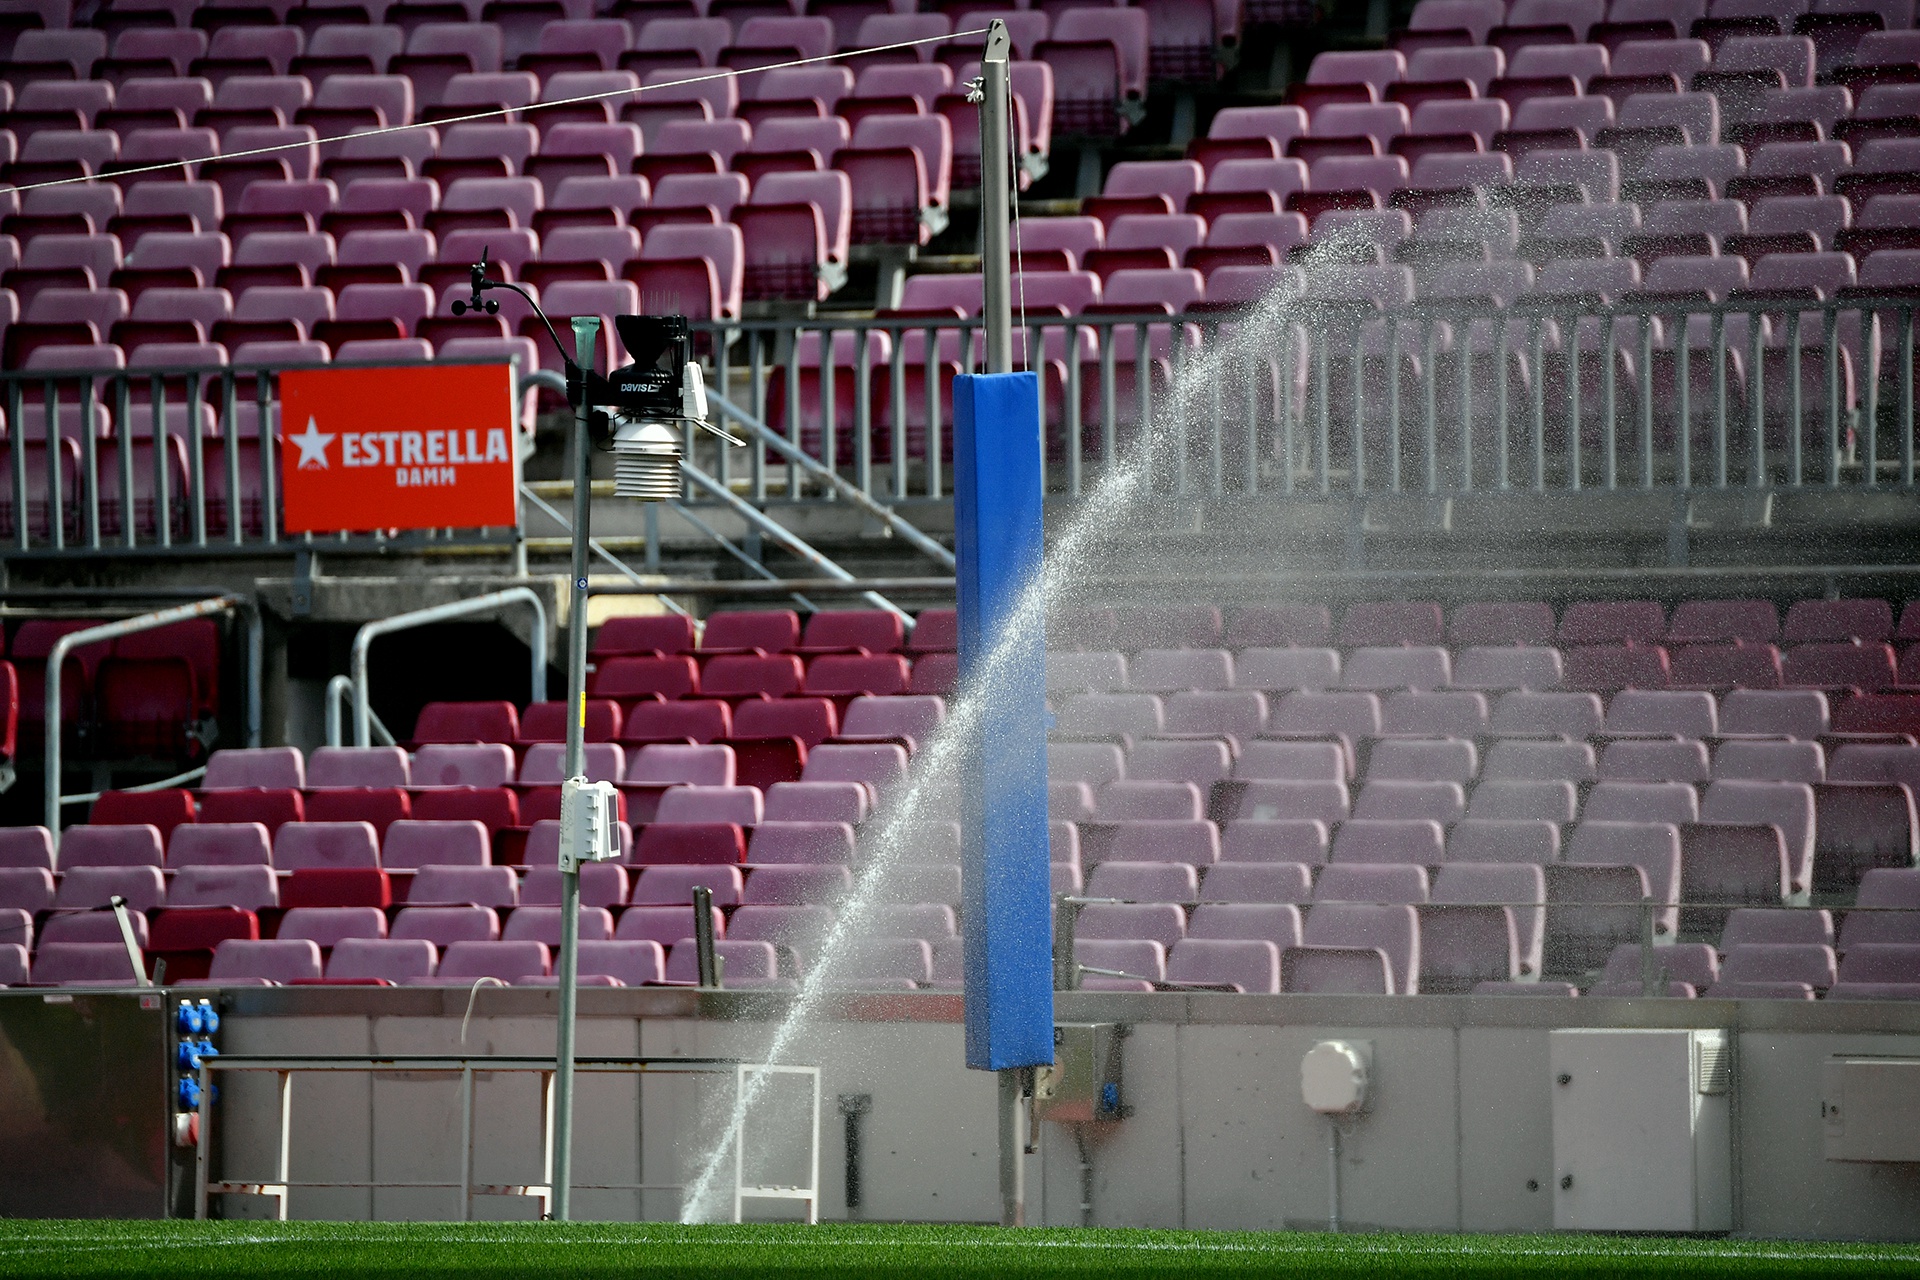 Sân vận động Camp Nou – Tất cả những gì cần biết về sân nhà của Barca 13